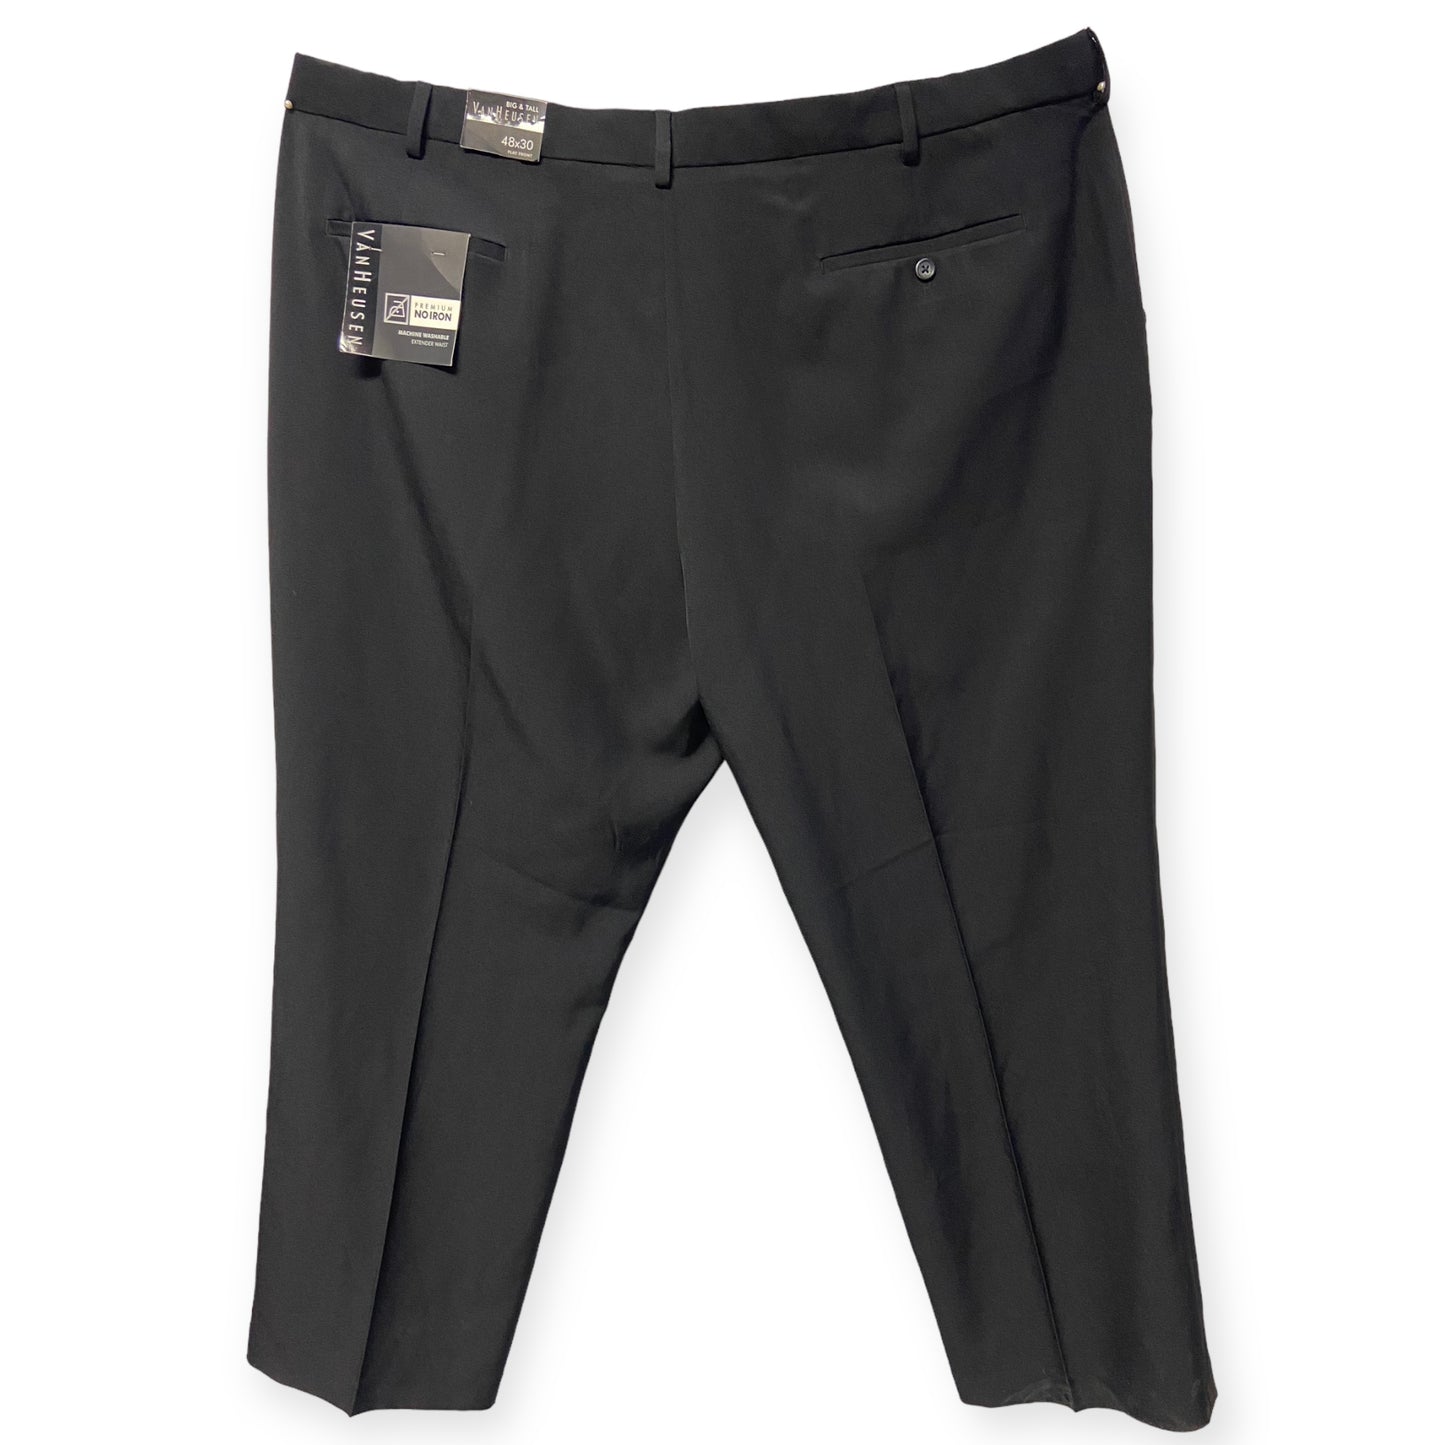 NWT Van Heusen Extended Waist Black Pants (Size 48X30)